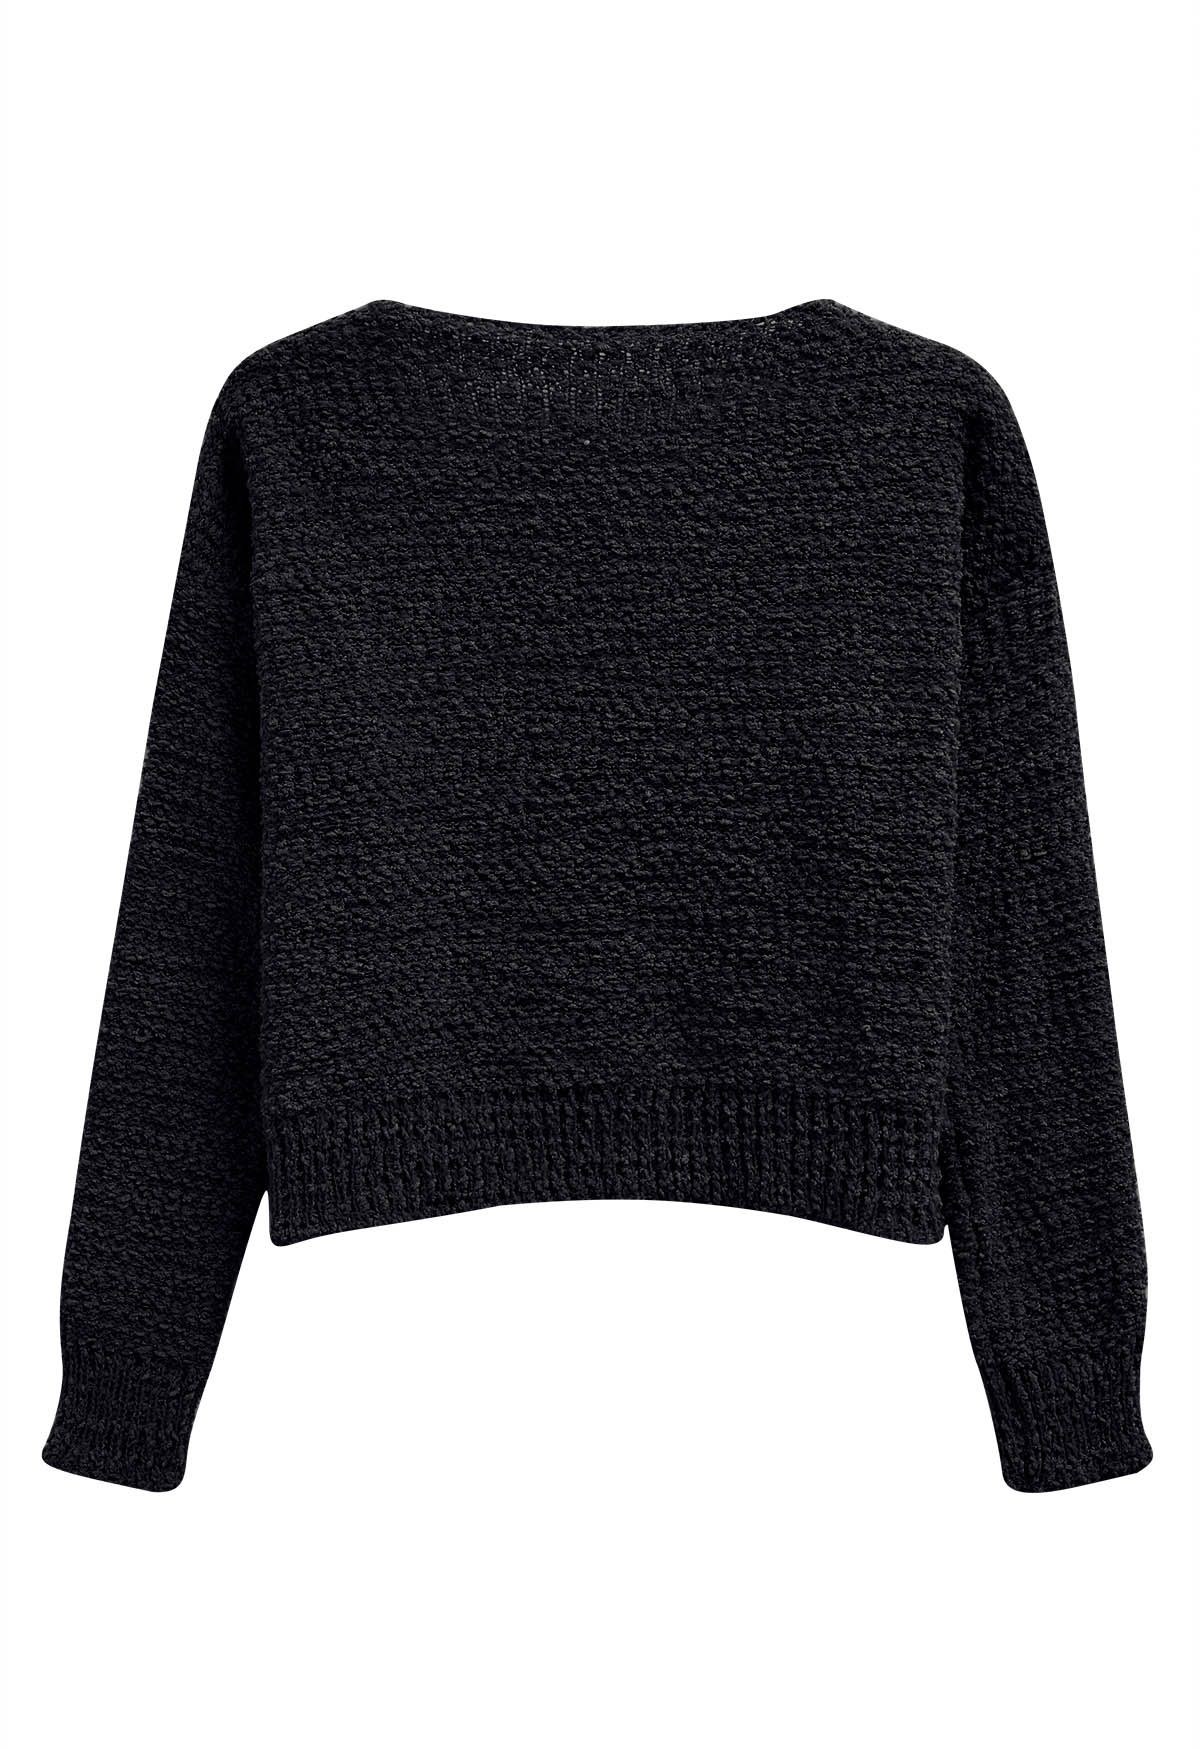 V-Neck Comfy Knit Sweater in Black